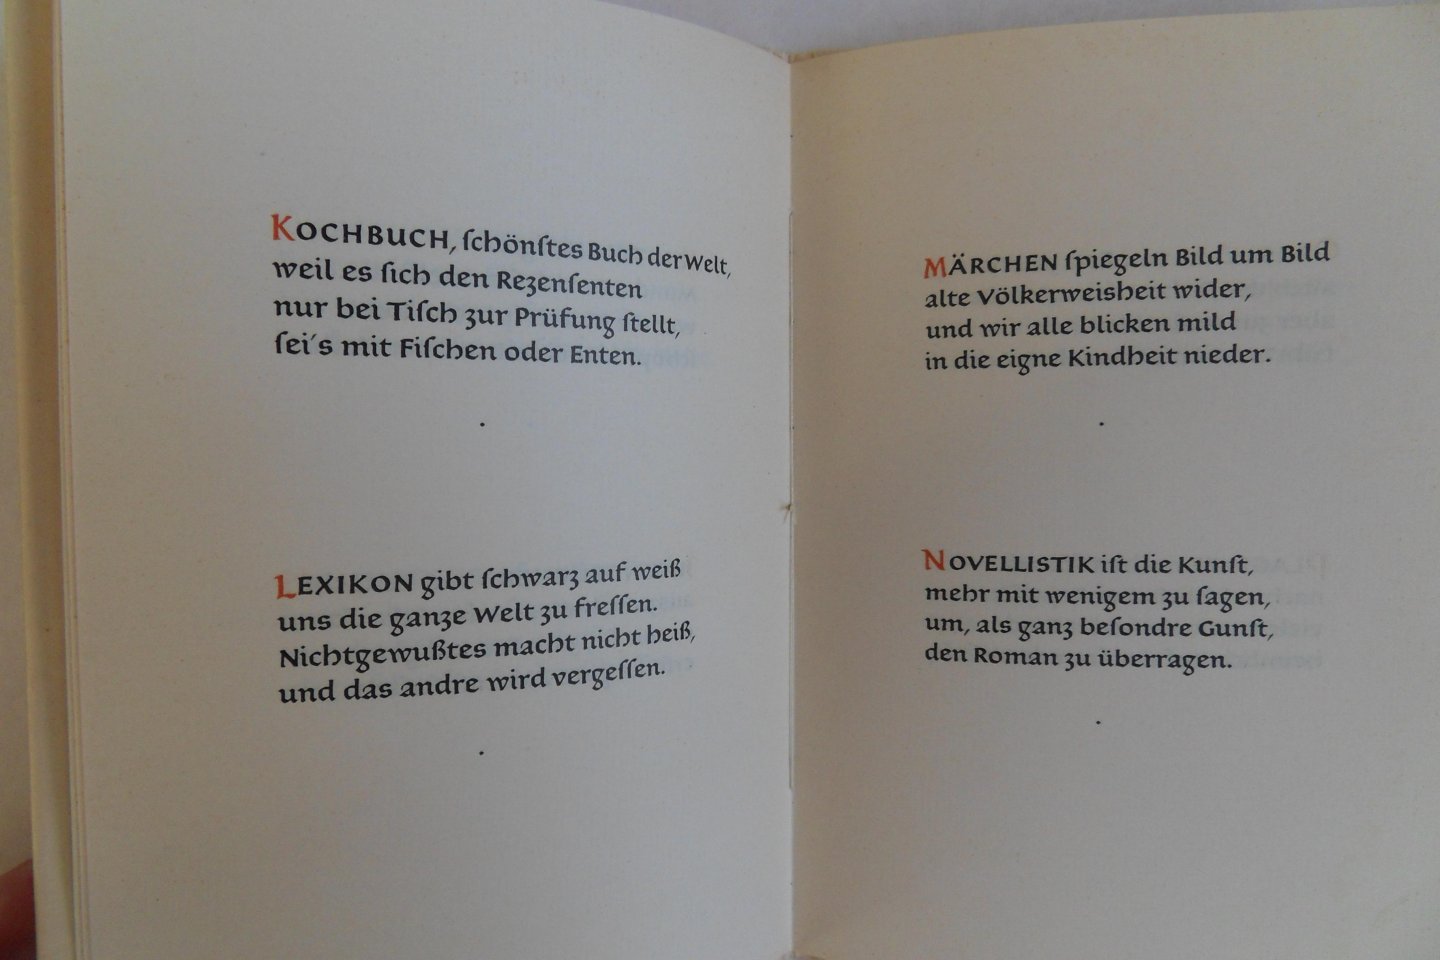 Schumacher. Hans - Kleines Inventar dessen, was unter dem Namen Buch gedruckt, verlegt und zum Kaufe angeboten wird, in alphabetische Reihenfolge. [ Genummerd ex. 469 / 500 ].